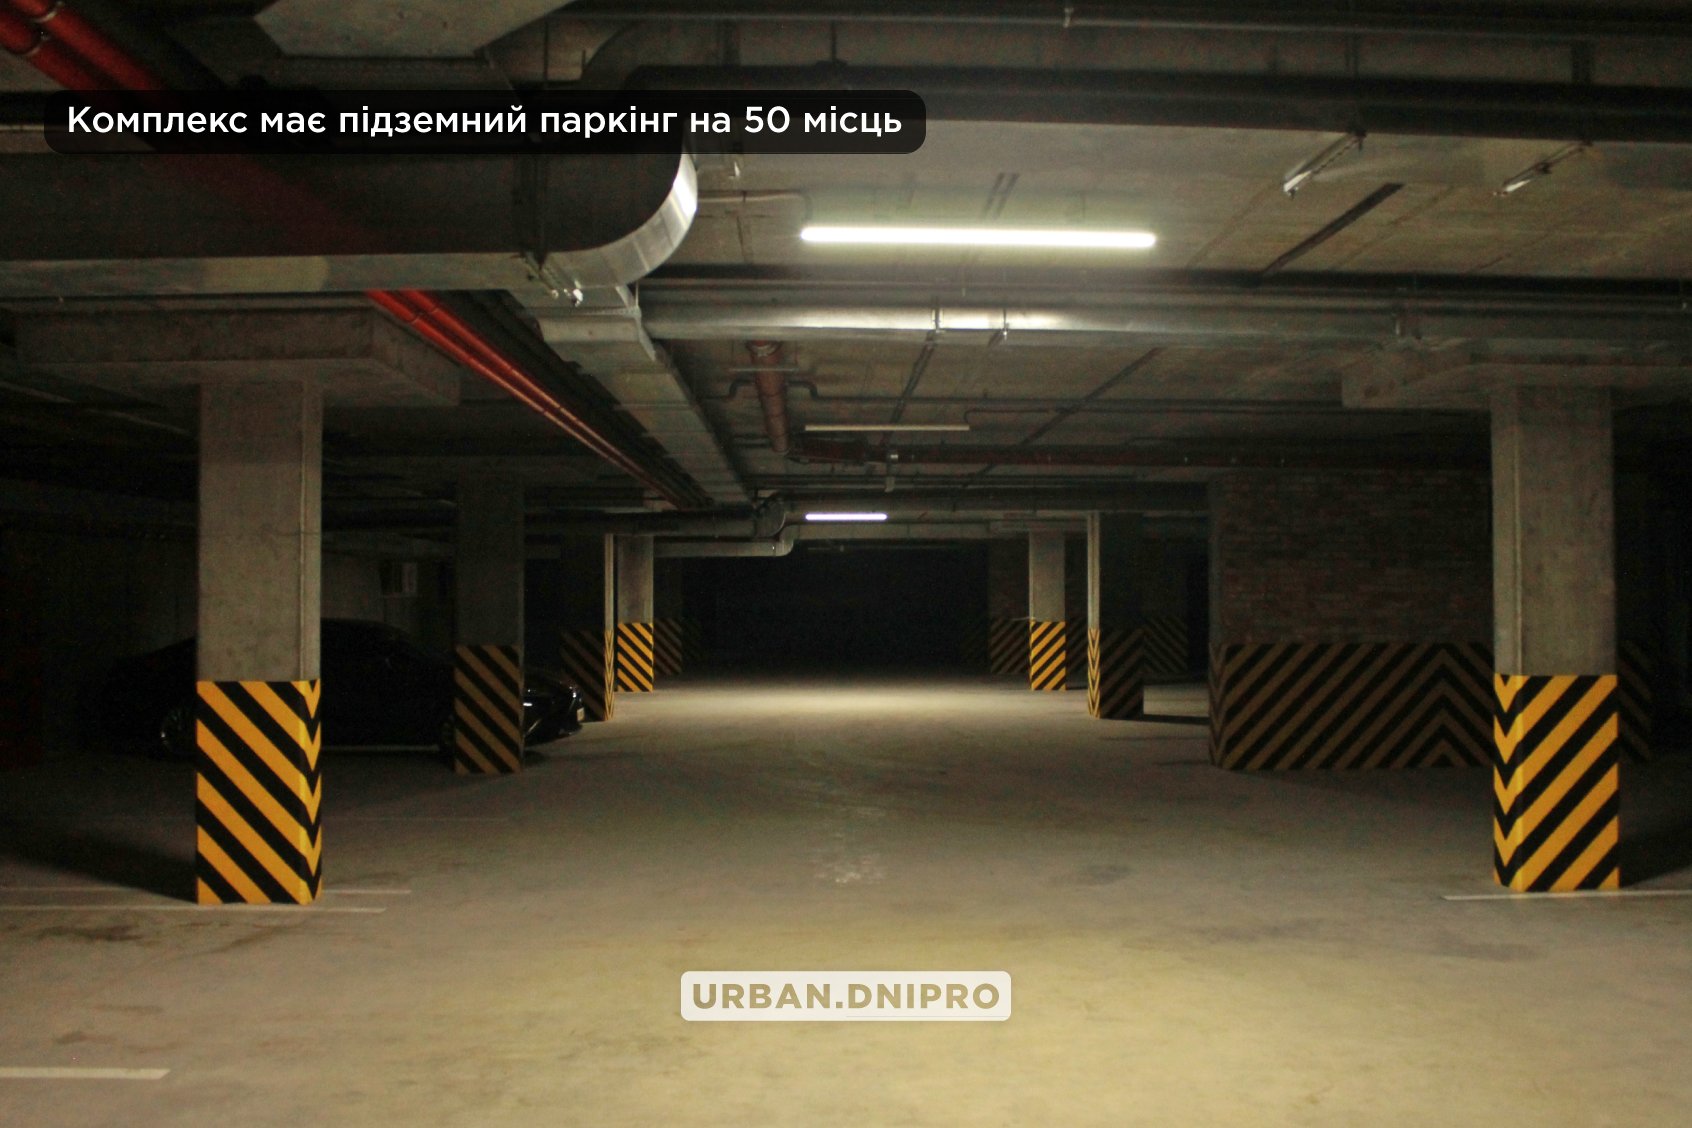 Комплекс имеет подземный паркинг – || фото: facebook.com/urban.dnipro